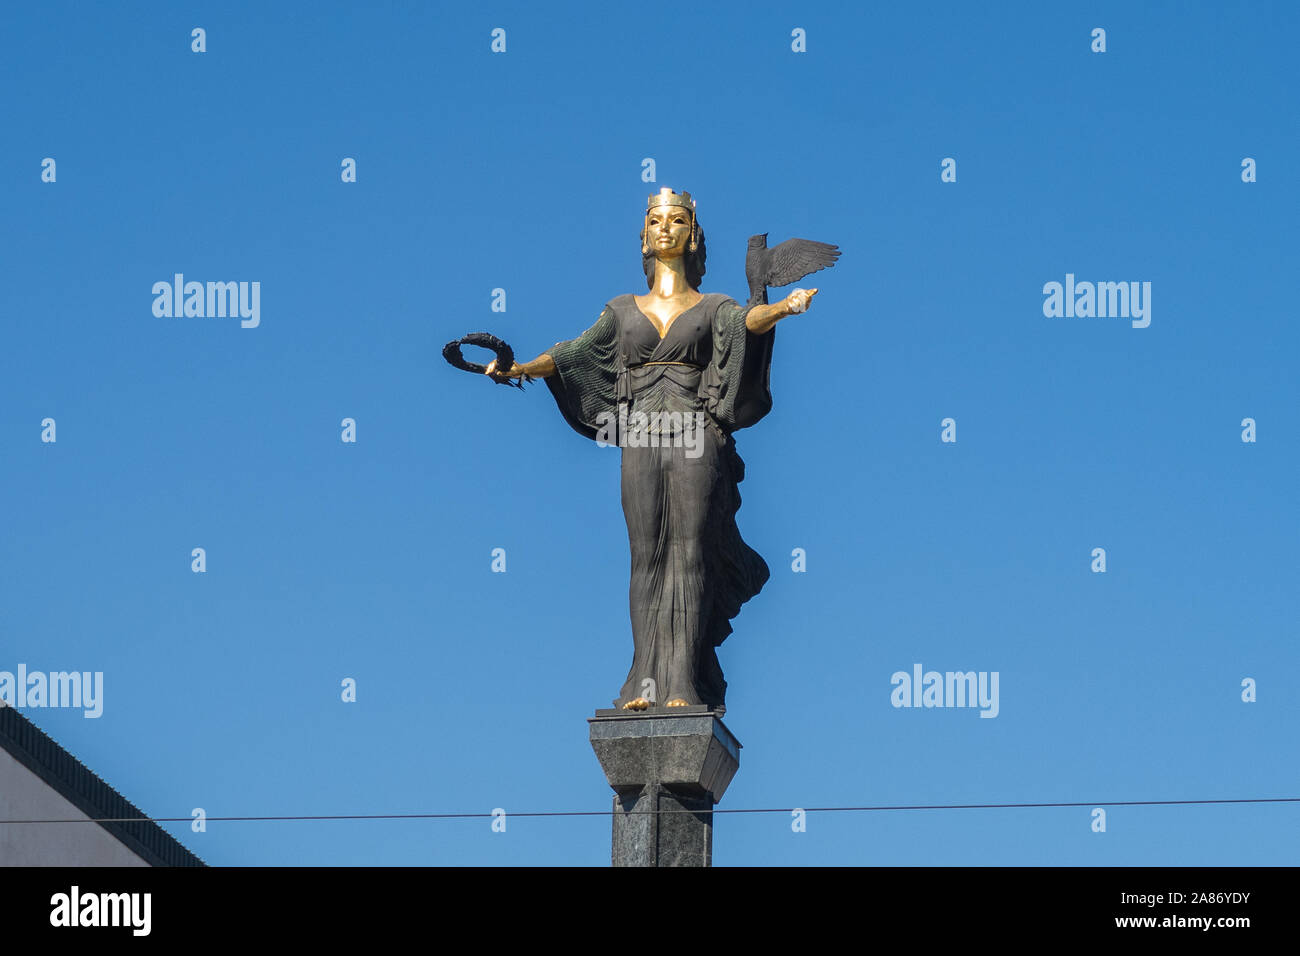 SOFIA, Bulgarien - 3. APRIL 2018: Nahaufnahme der Statue von Sveta Sofia während des Tages. Stockfoto